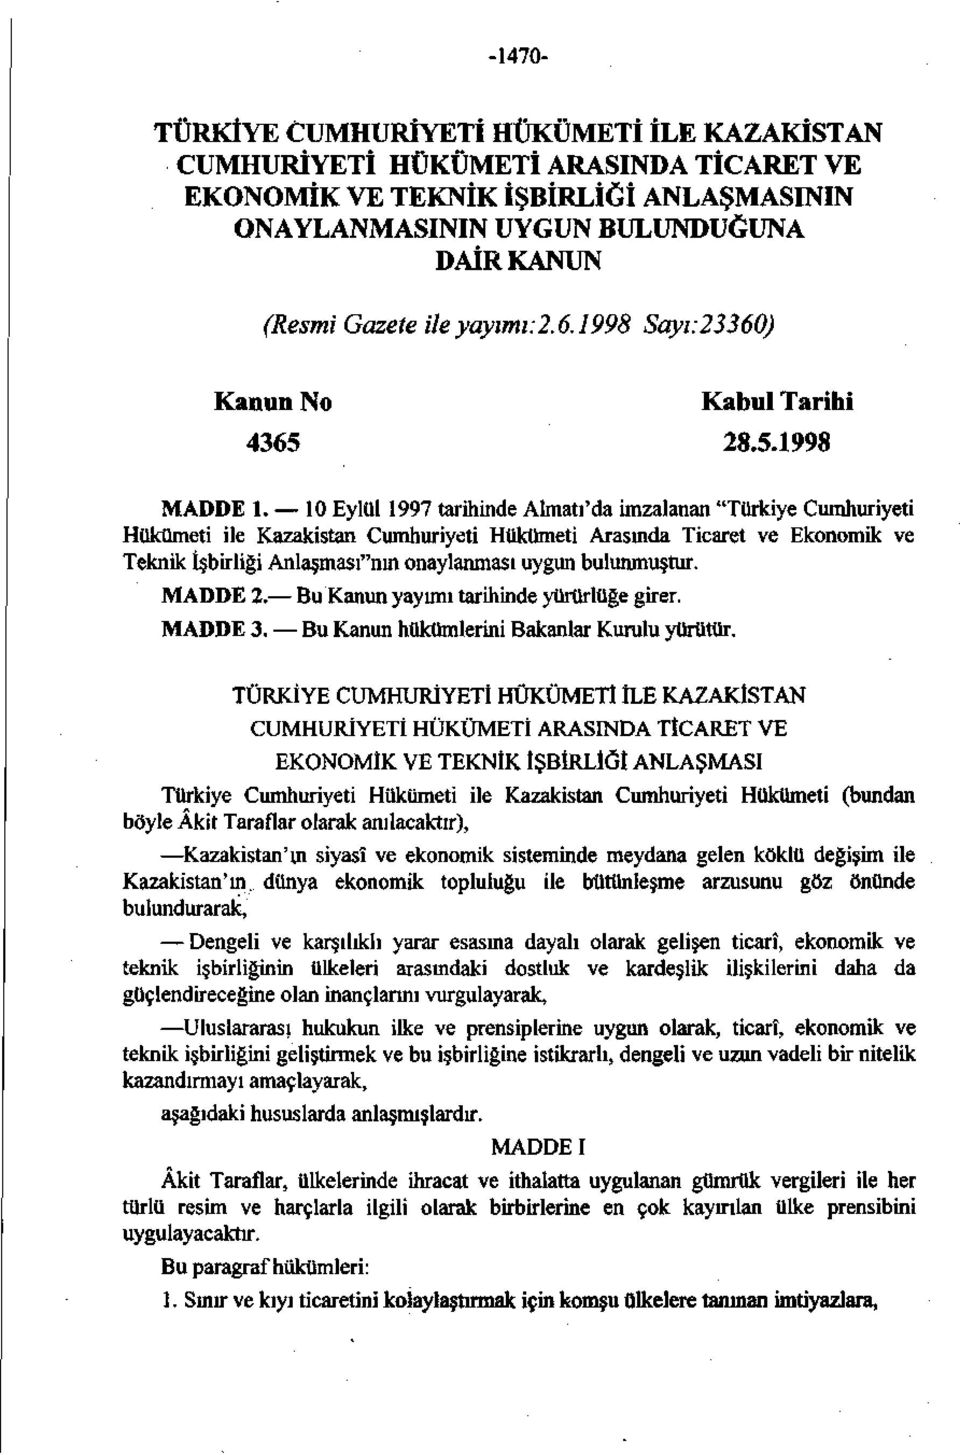 10 Eylül 1997 tarihinde Almatı'da imzalanan "Türkiye Cumhuriyeti Hükümeti ile Kazakistan Cumhuriyeti Hükümeti Arasında Ticaret ve Ekonomik ve Teknik İşbirliği Anlaşması"nın onaylanması uygun